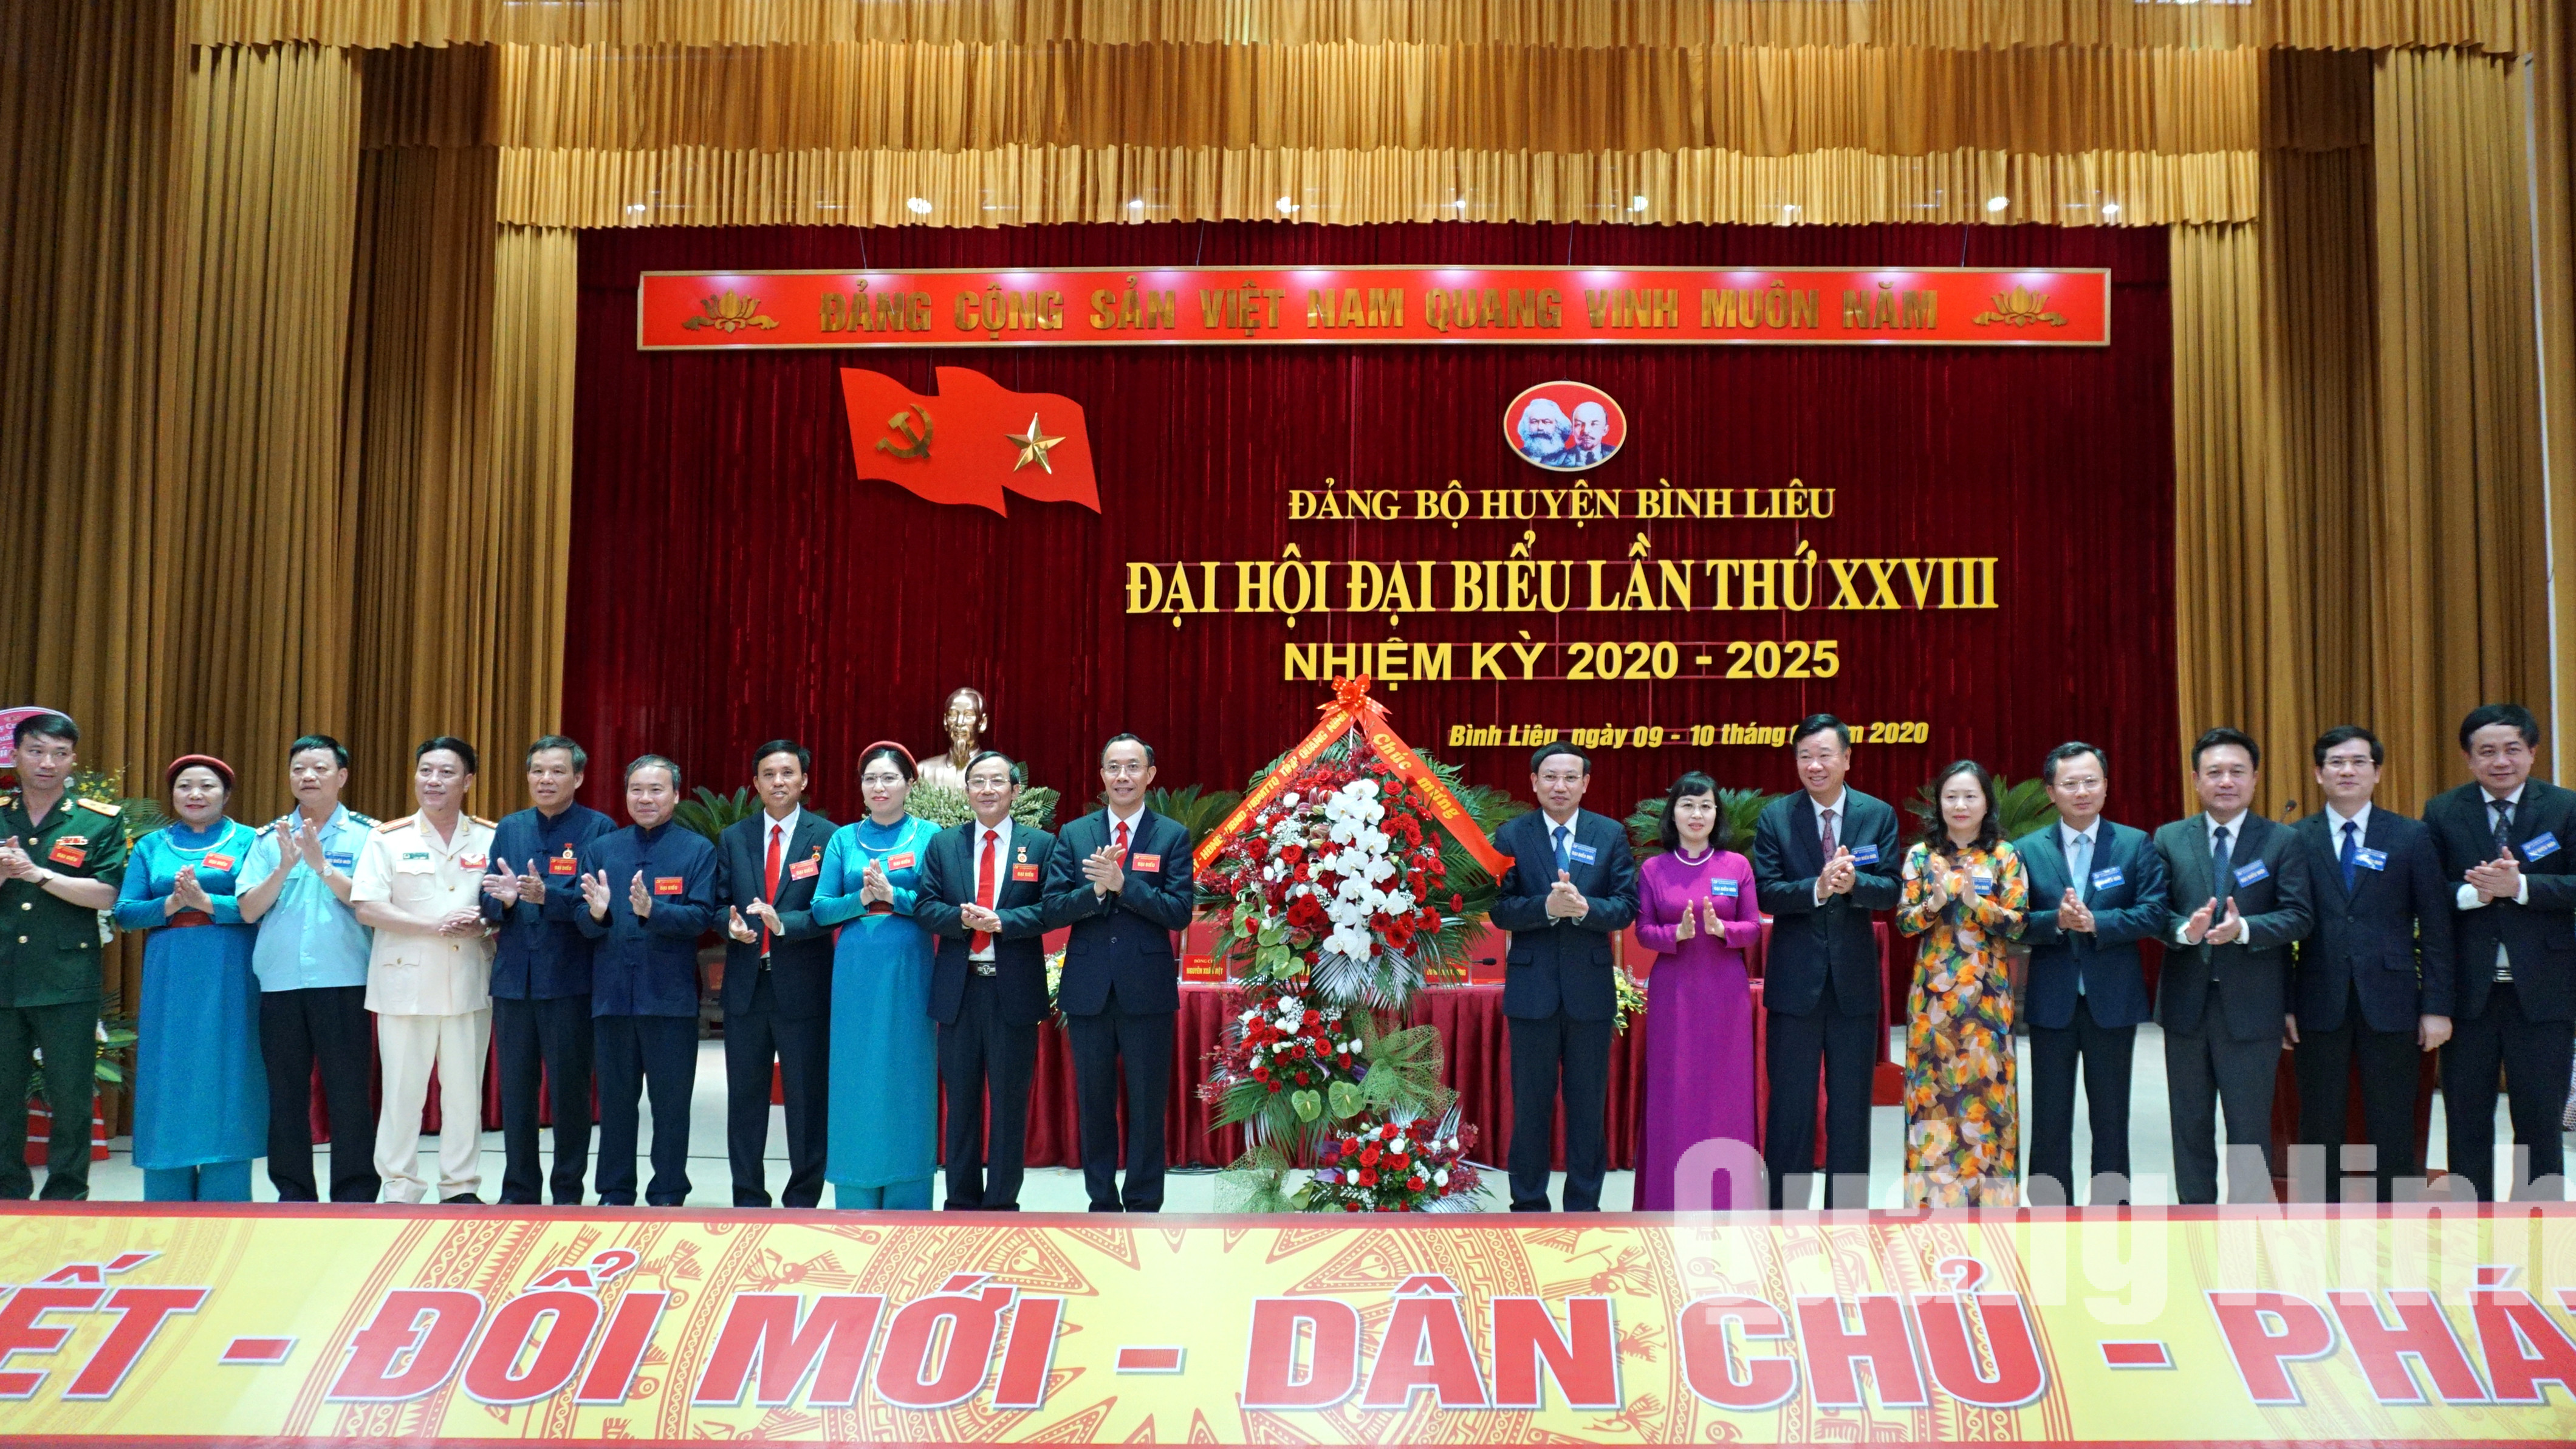 Các đồng chí lãnh đạo tỉnh tặng hoa chúc mừng Đại hội Đảng bộ huyện Bình Liêu (6-2020). Ảnh: Nguyễn Thanh